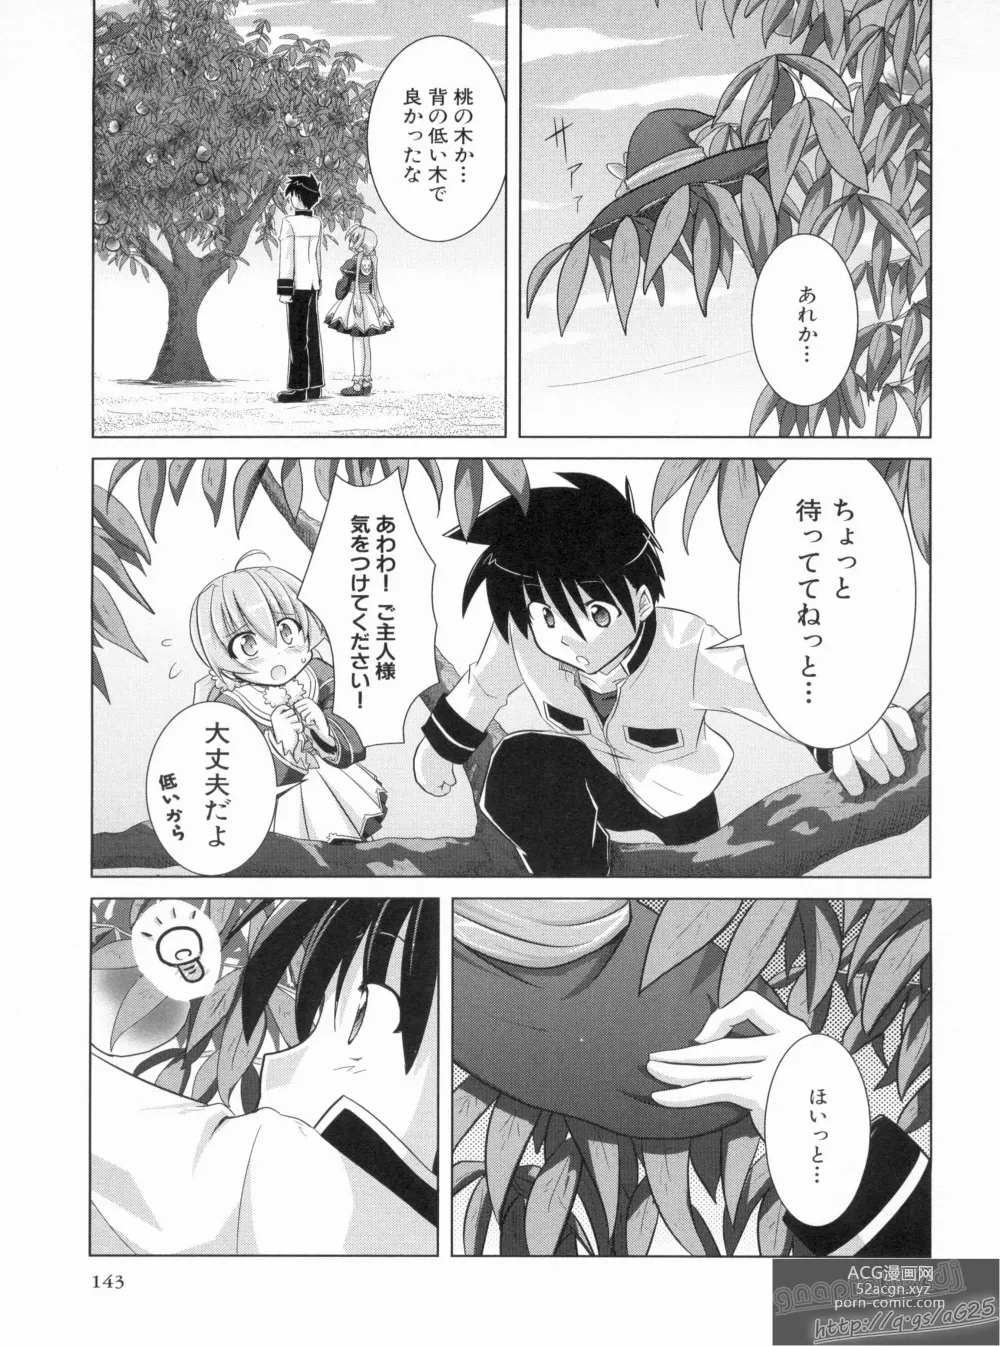 Page 147 of manga Shin Koihime Musou Gaishi Saiten VOL.2